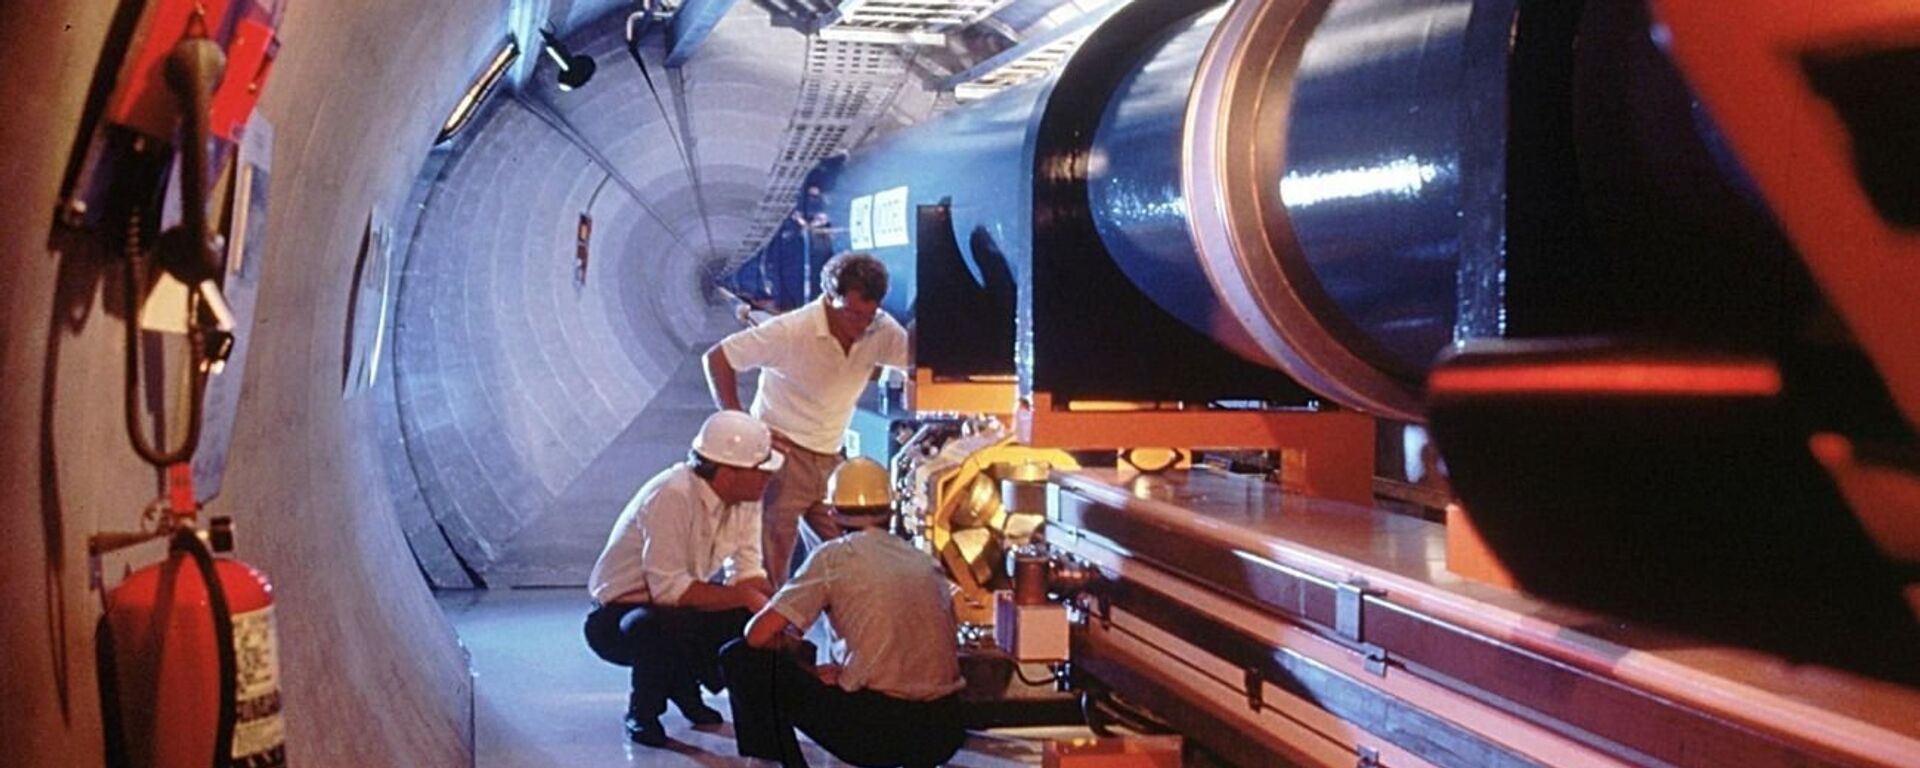 Najveća i najvažnija istraživanja CERN-a obavljaju se u Velikom hadronskom sudaraču, podzemnom tunelu dugačkom 27 kilometara na granici Švajcarske i Francuske - Sputnik Srbija, 1920, 02.01.2022